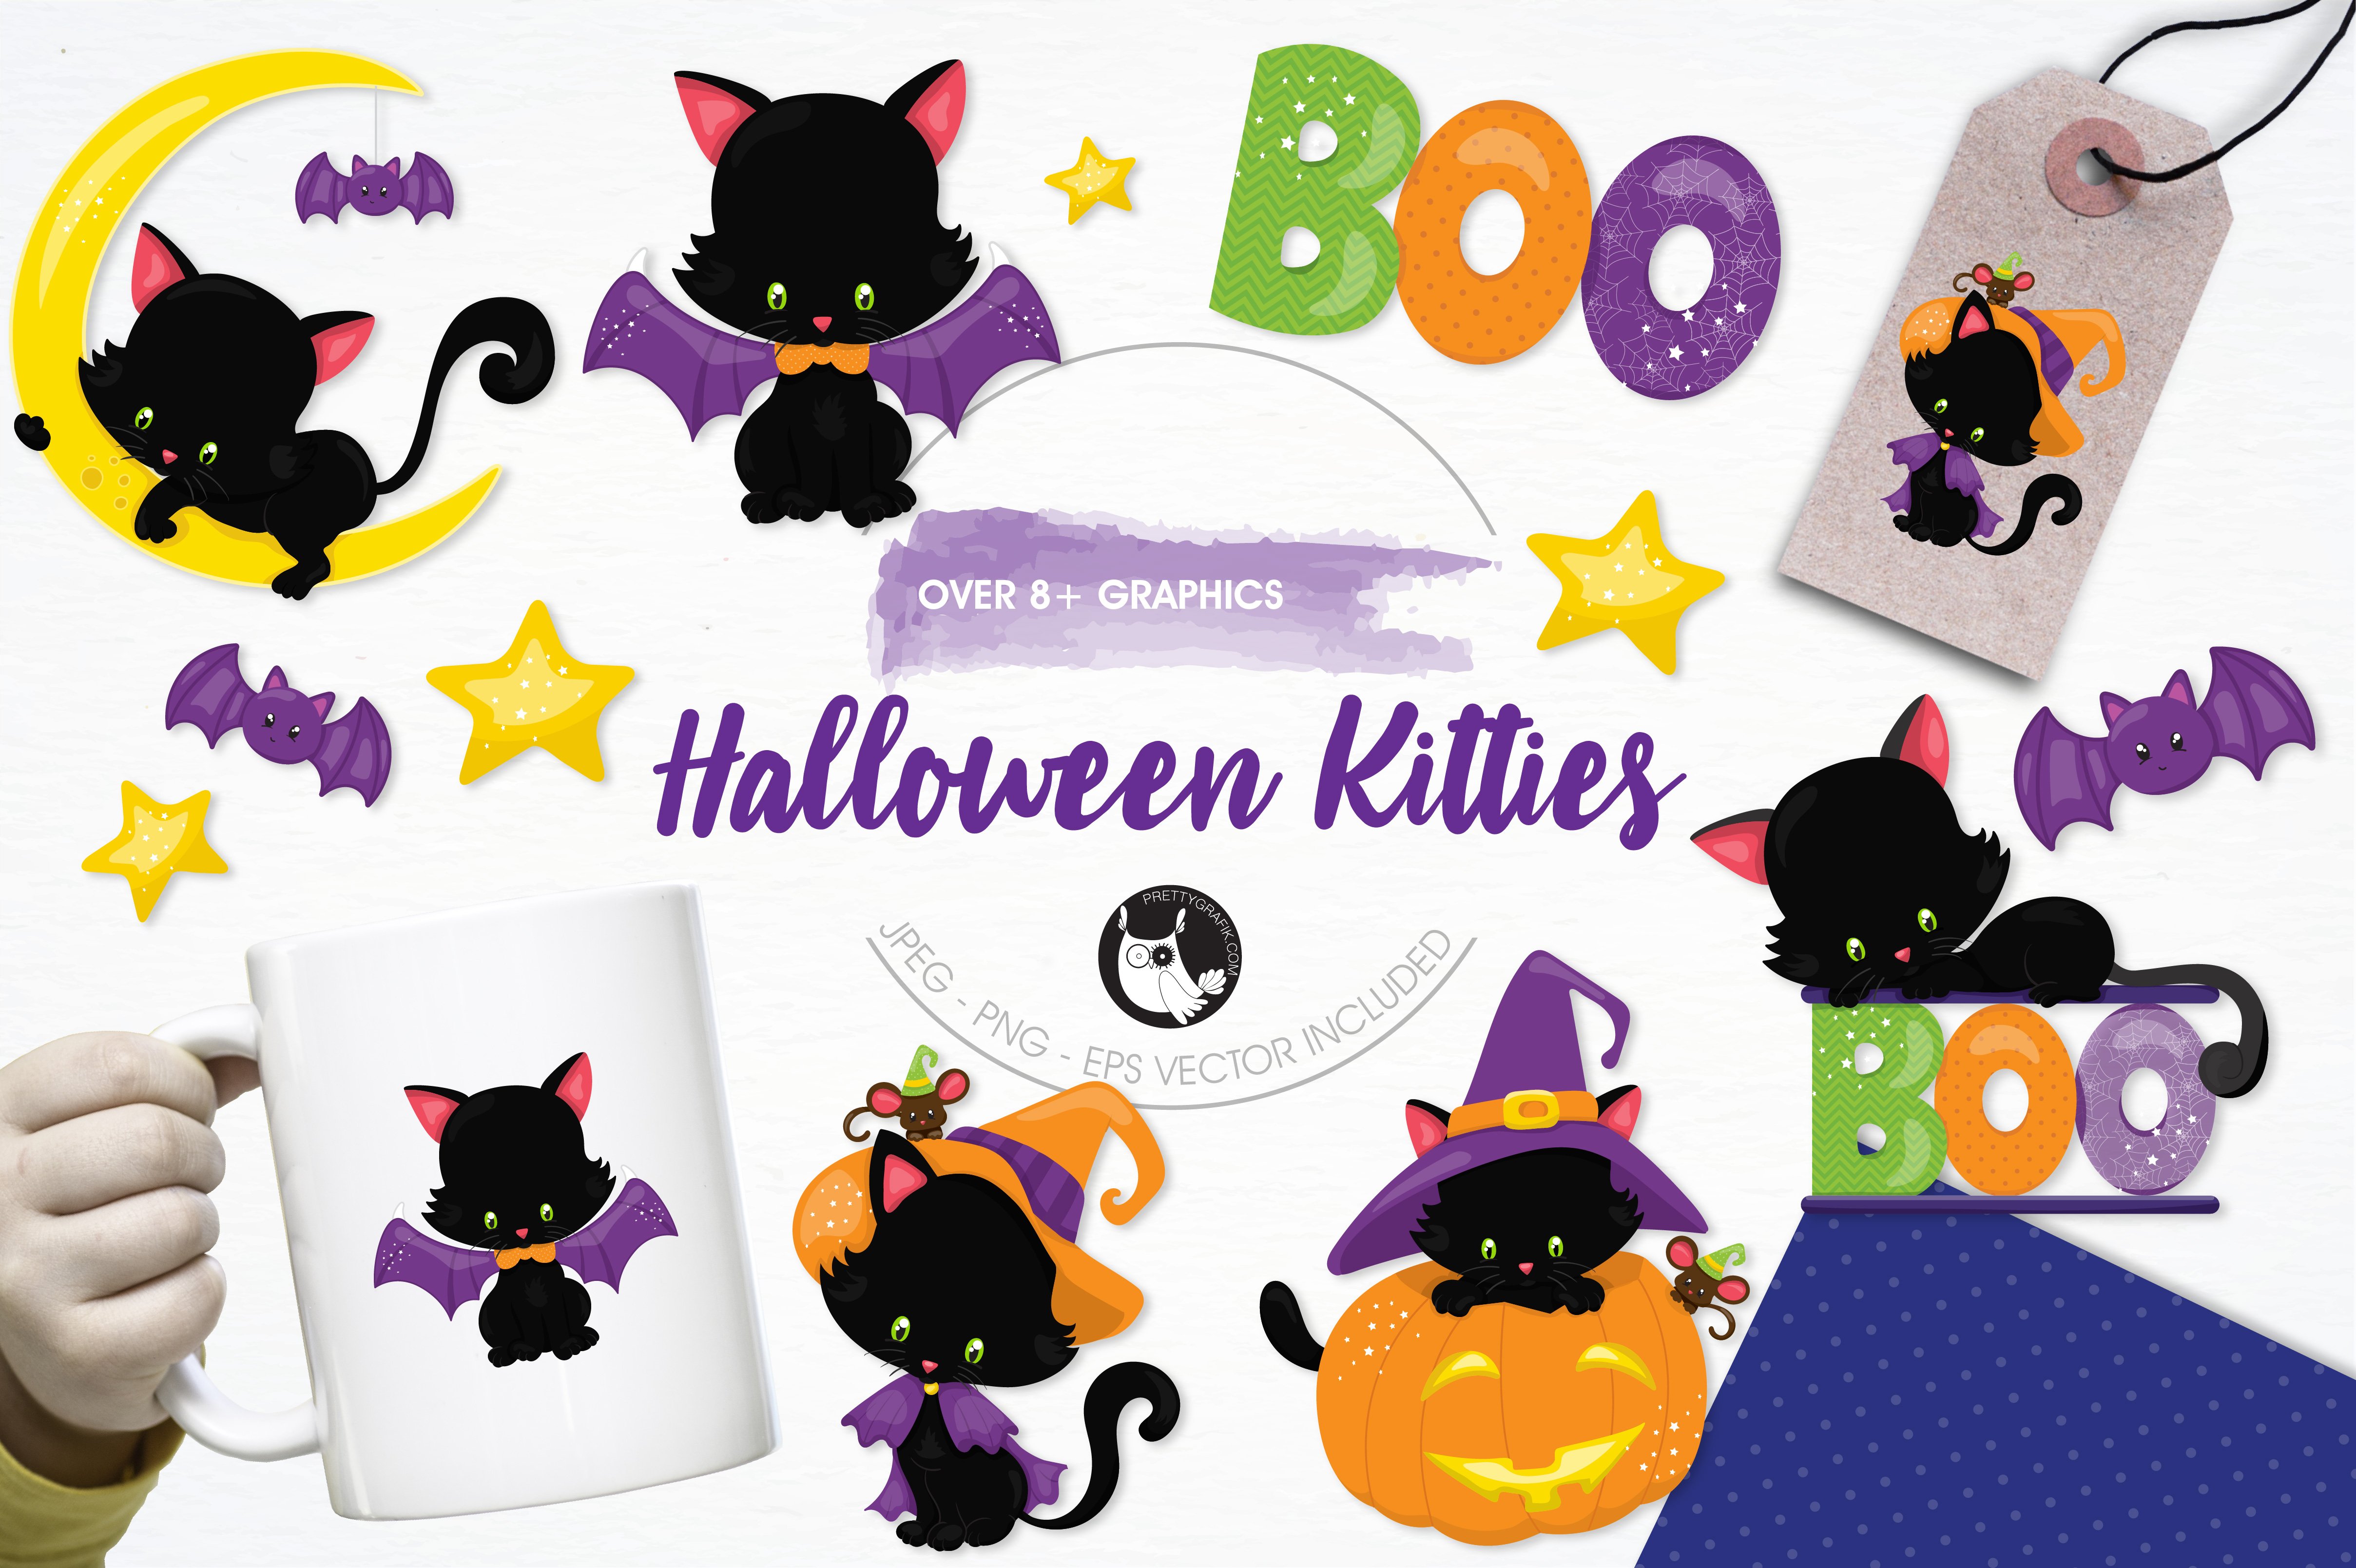 Halloween Kitties Illustration Pack - Vector Image